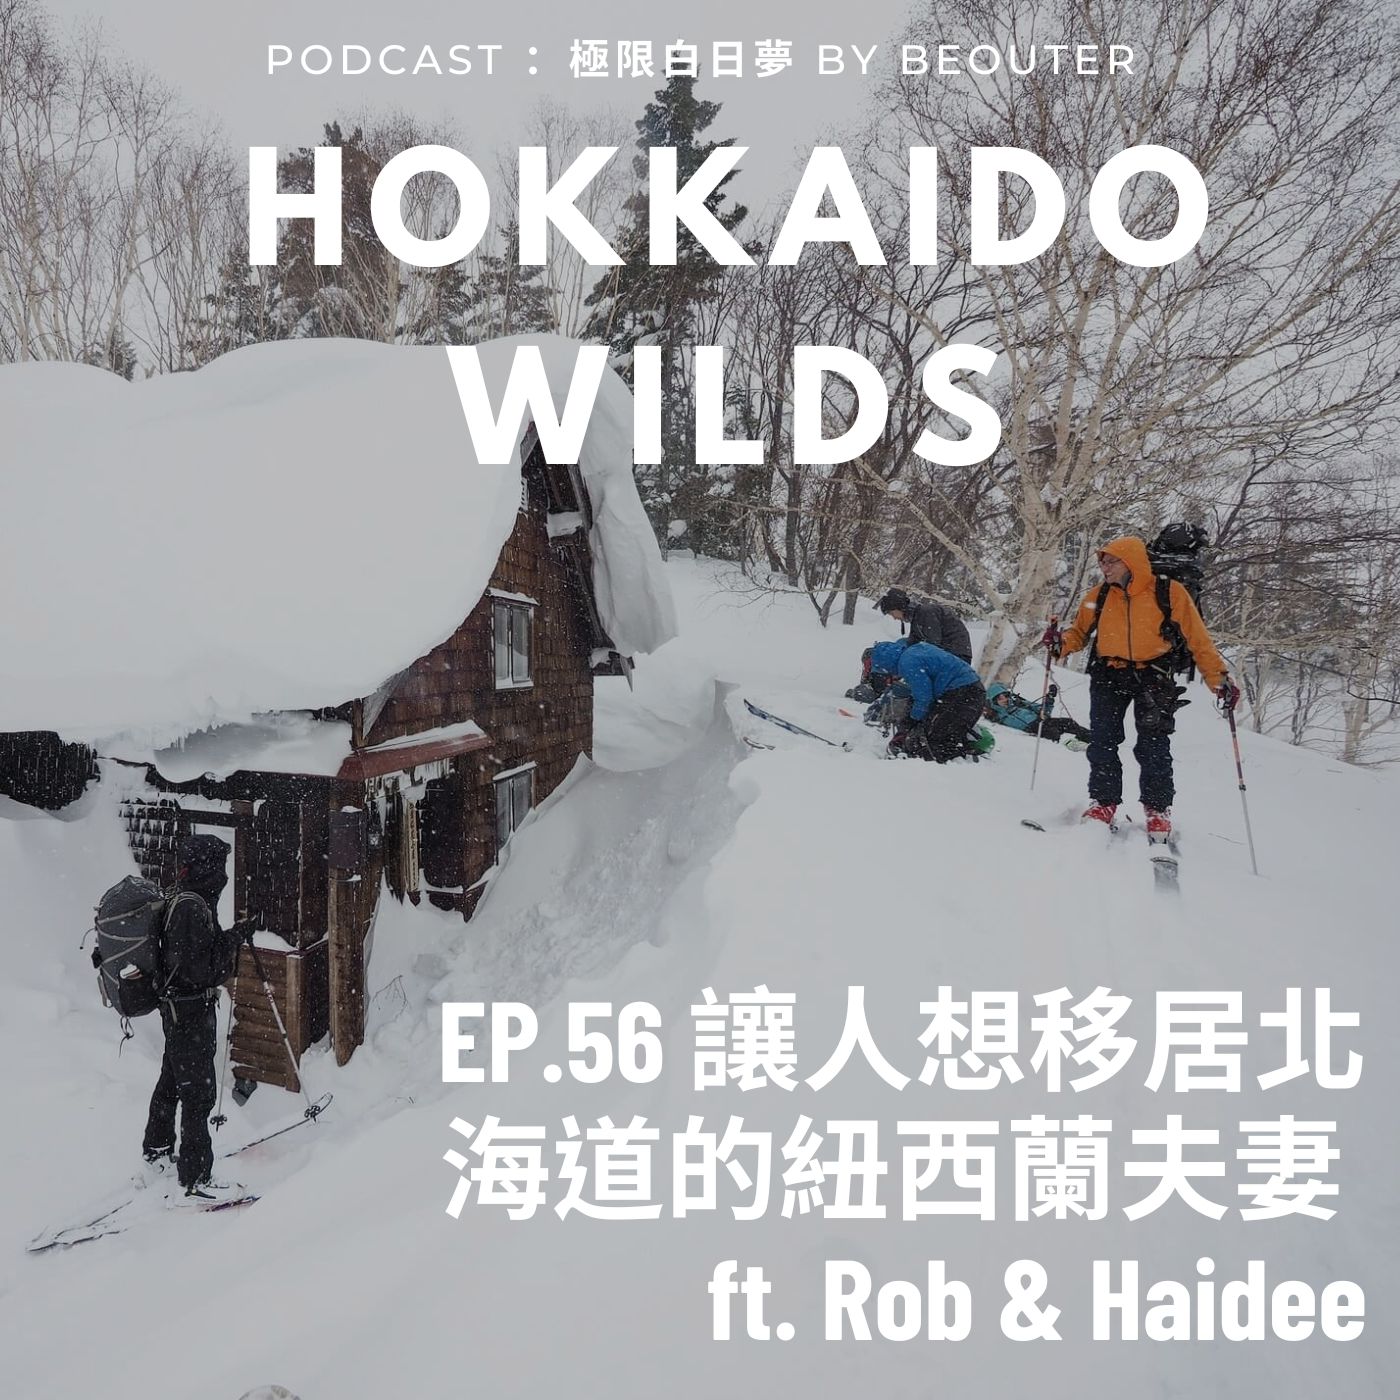 Hokkaido Wilds